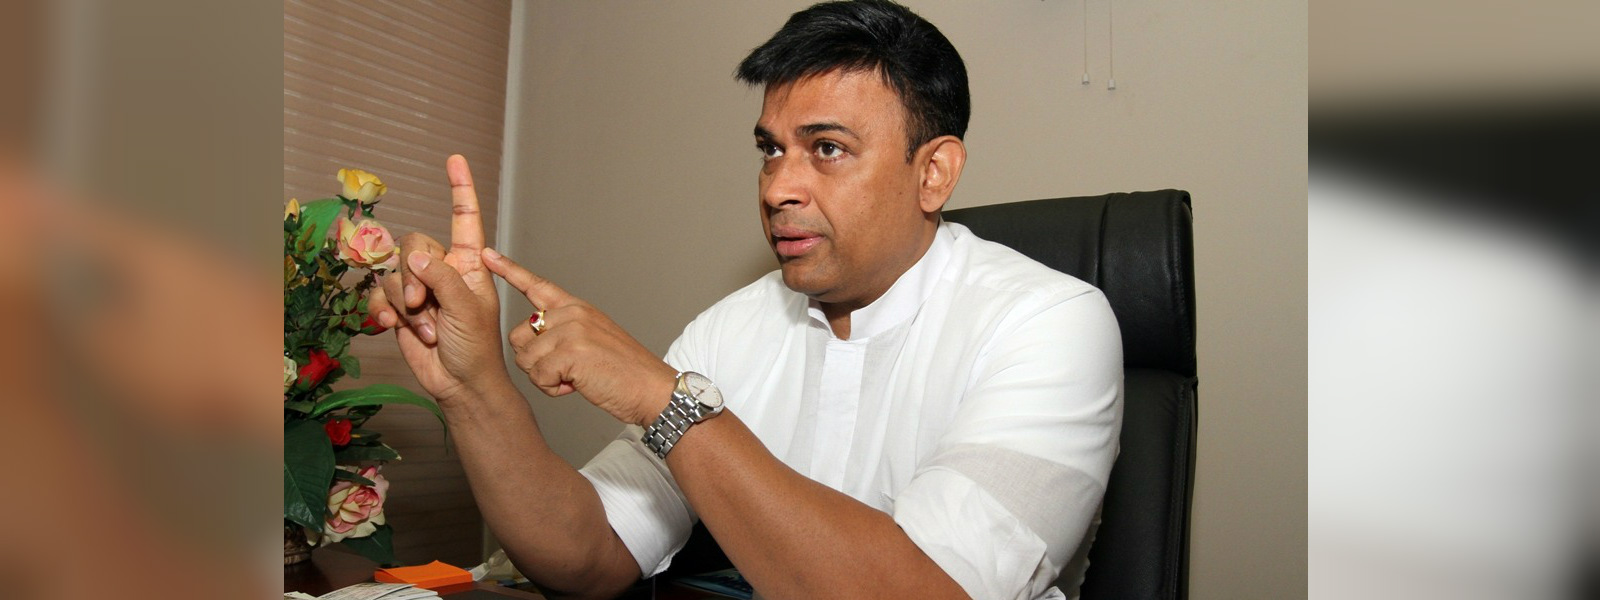 MP Ranjan Ramanayake's residence searched